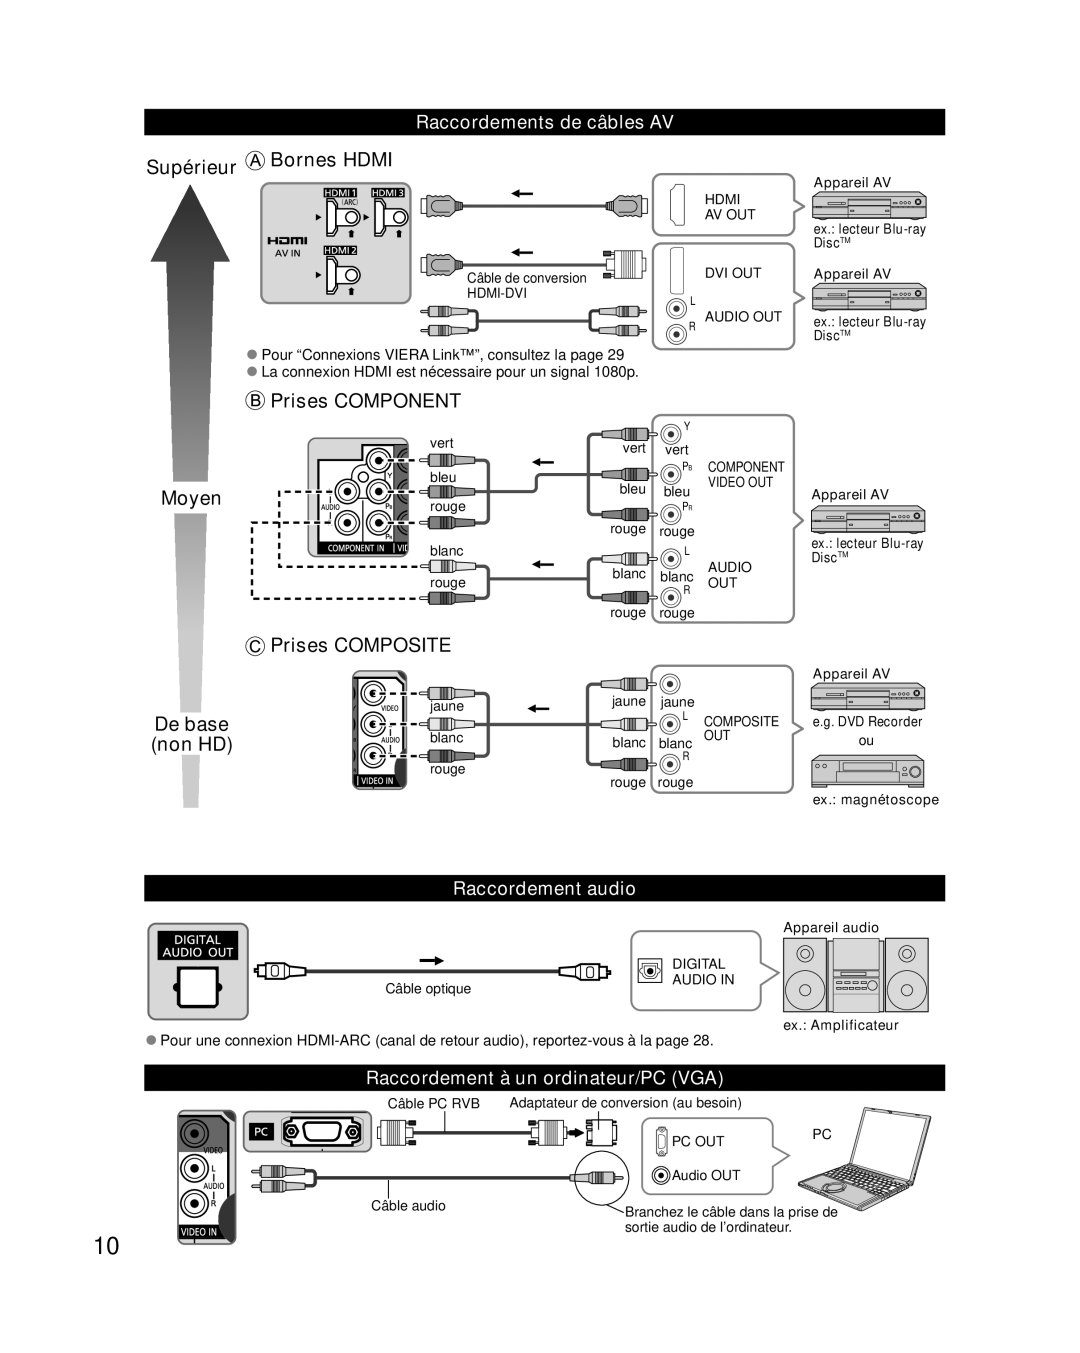 Panasonic TC-L42E30 Supérieur Bornes HDMI, Prises COMPONENT, Moyen, Prises COMPOSITE, De base non HD, Raccordement audio 